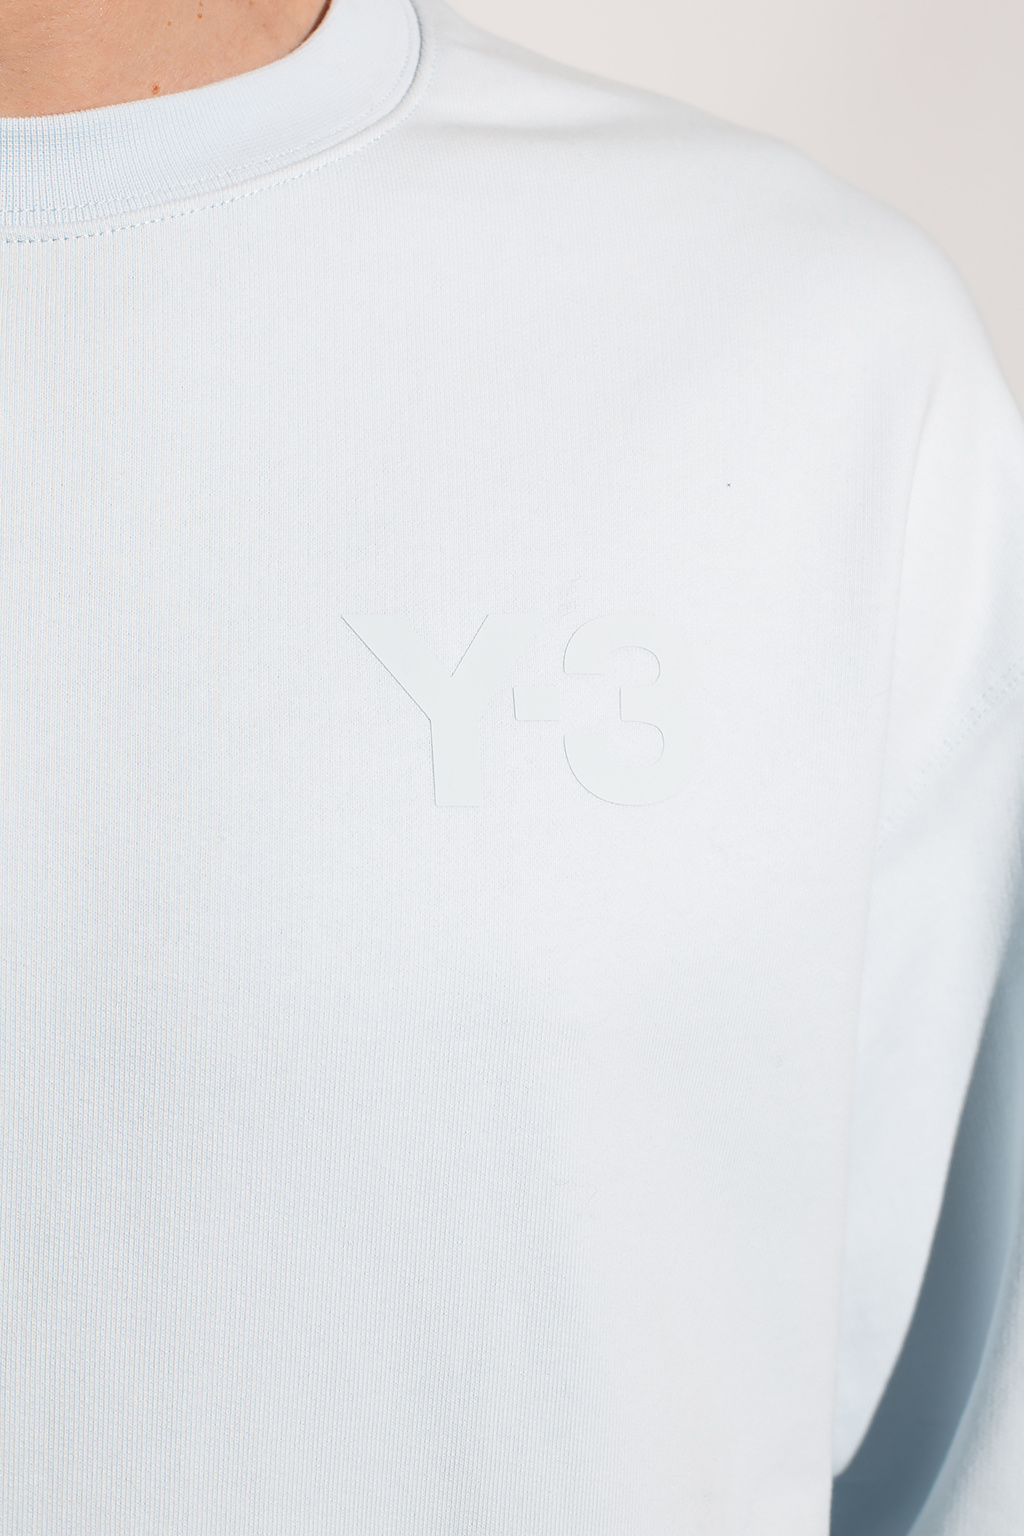 Y-3 Yohji Yamamoto Grey storage Coats Jackets